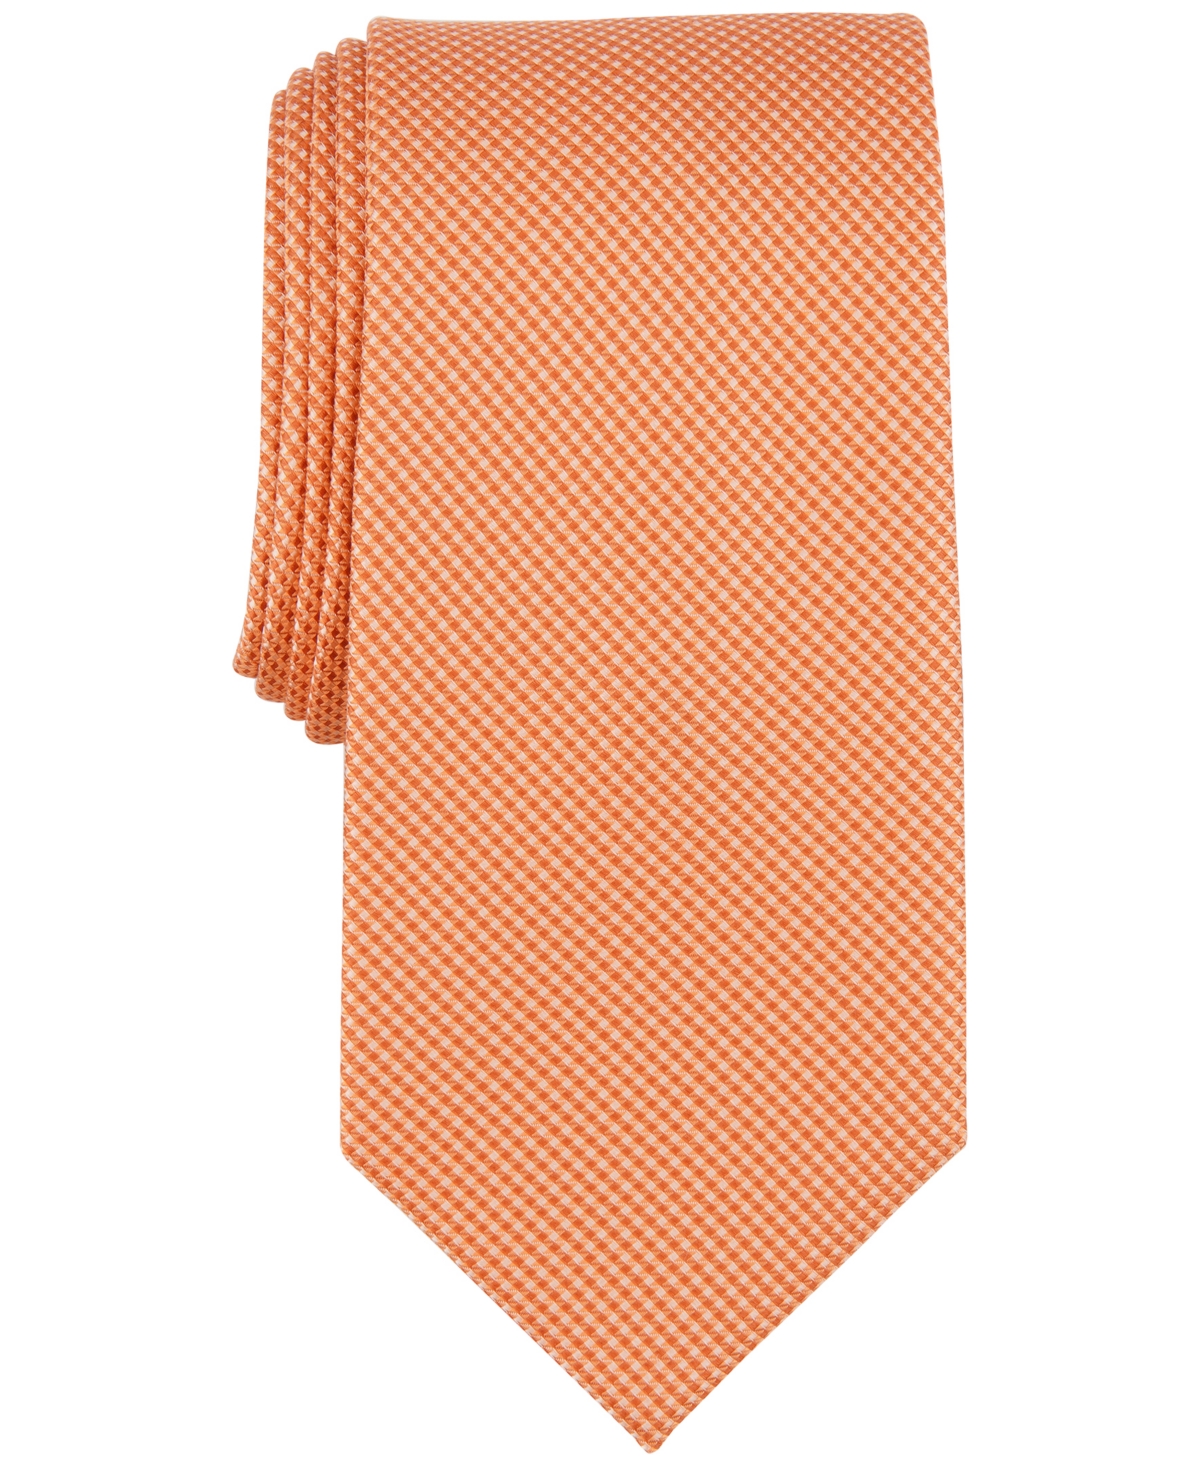 Michael Kors Men's Sorrento Solid Tie In Orange